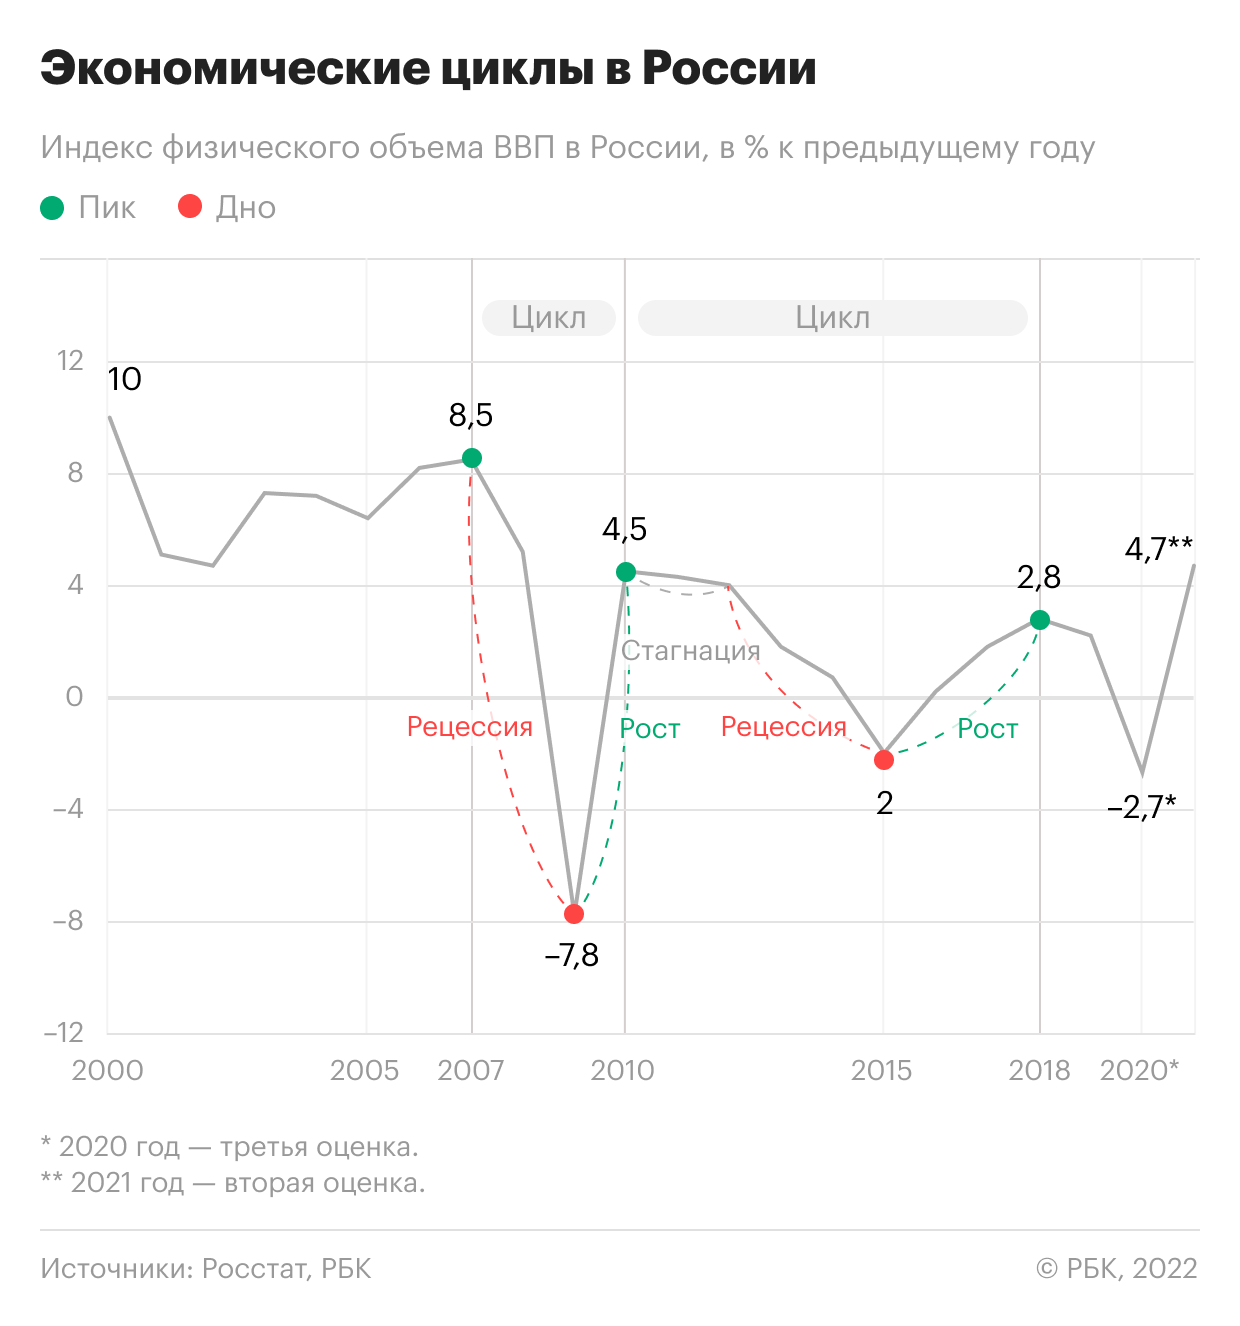 <p>Экономические циклы на примере индекса физического объема ВВП России. В&nbsp;2011 и 2012 годах была зафиксирована стагнация&nbsp;&mdash;&nbsp; ВВП был на уровнях 4,3% и 4,0% соответственно. В 2013 году стагнация&nbsp;перешла в рецессию</p>